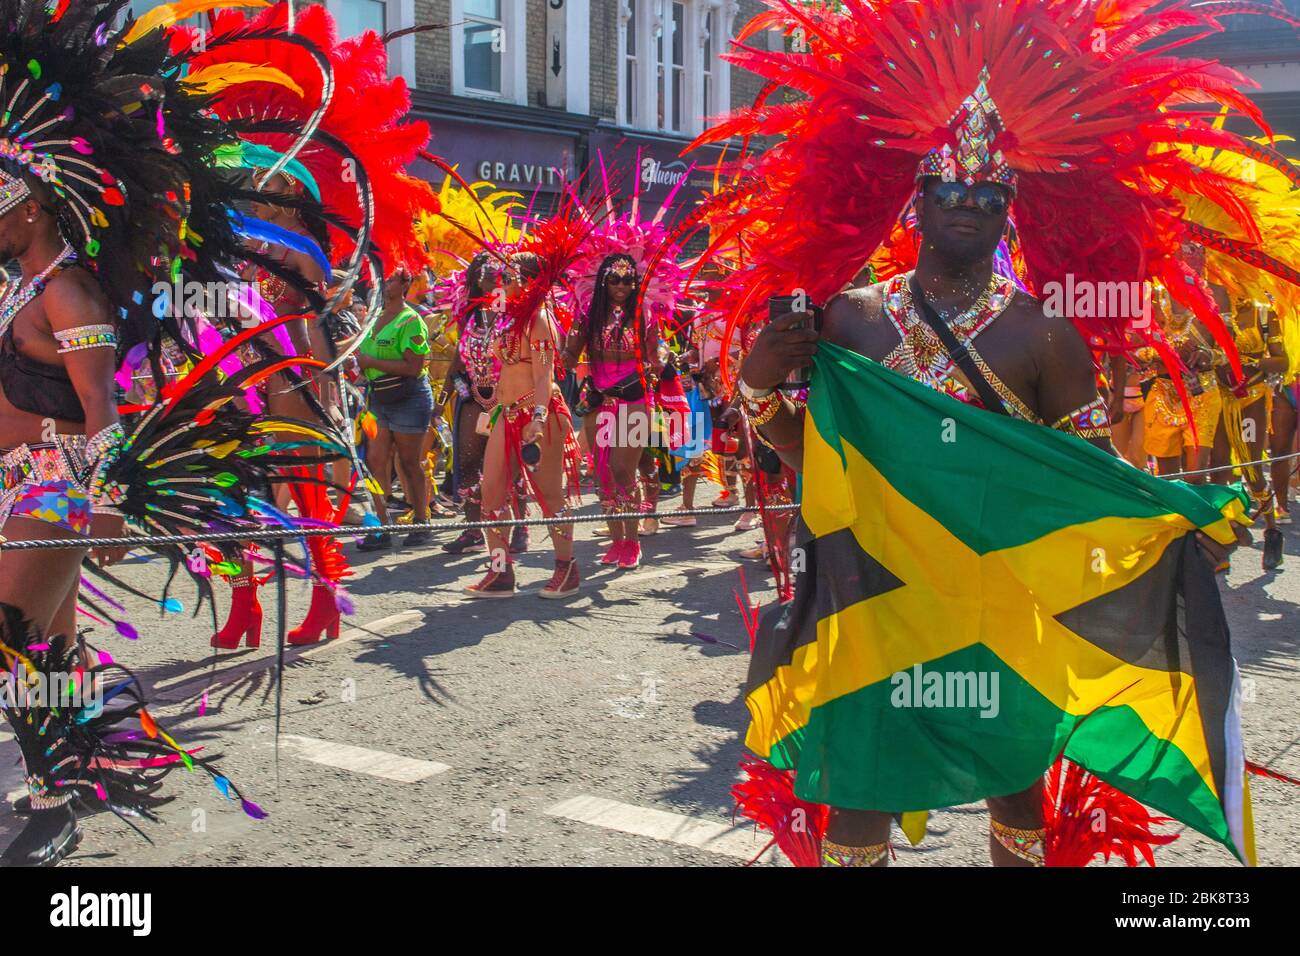 Londres / Royaume-Uni - 26 août 2019 : un homme dans une tenue de samba dansant avec un drapeau jamaïcain à la 53e édition du Carnaval de Notting Hill 2019 Banque D'Images